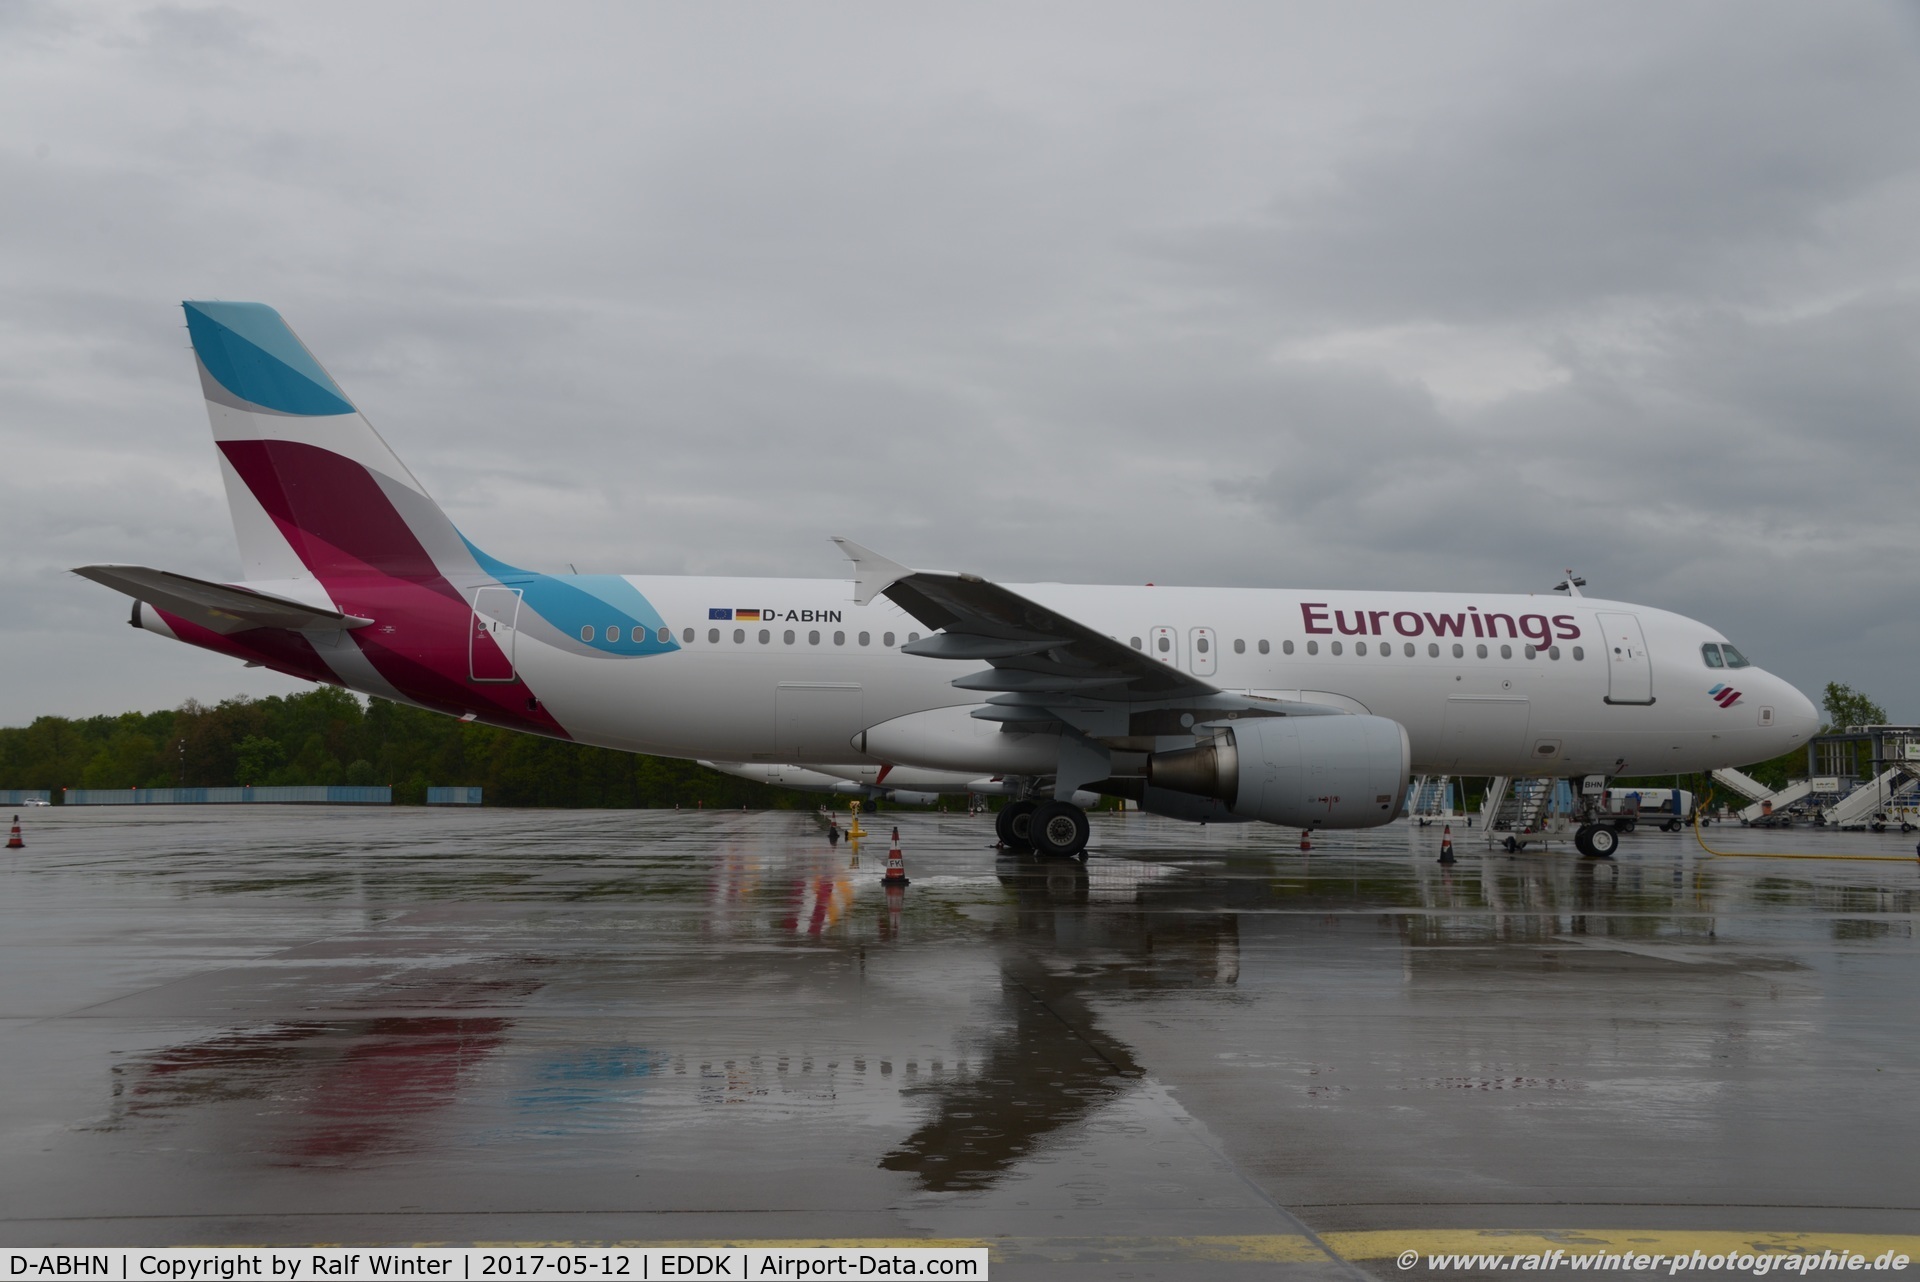 D-ABHN, 2010 Airbus A320-214 C/N 4368, Airbus A320-214 - EW EWG Eurowings ex Air Berlin - 4368 - DABHN - 12.05.2017 - CGN